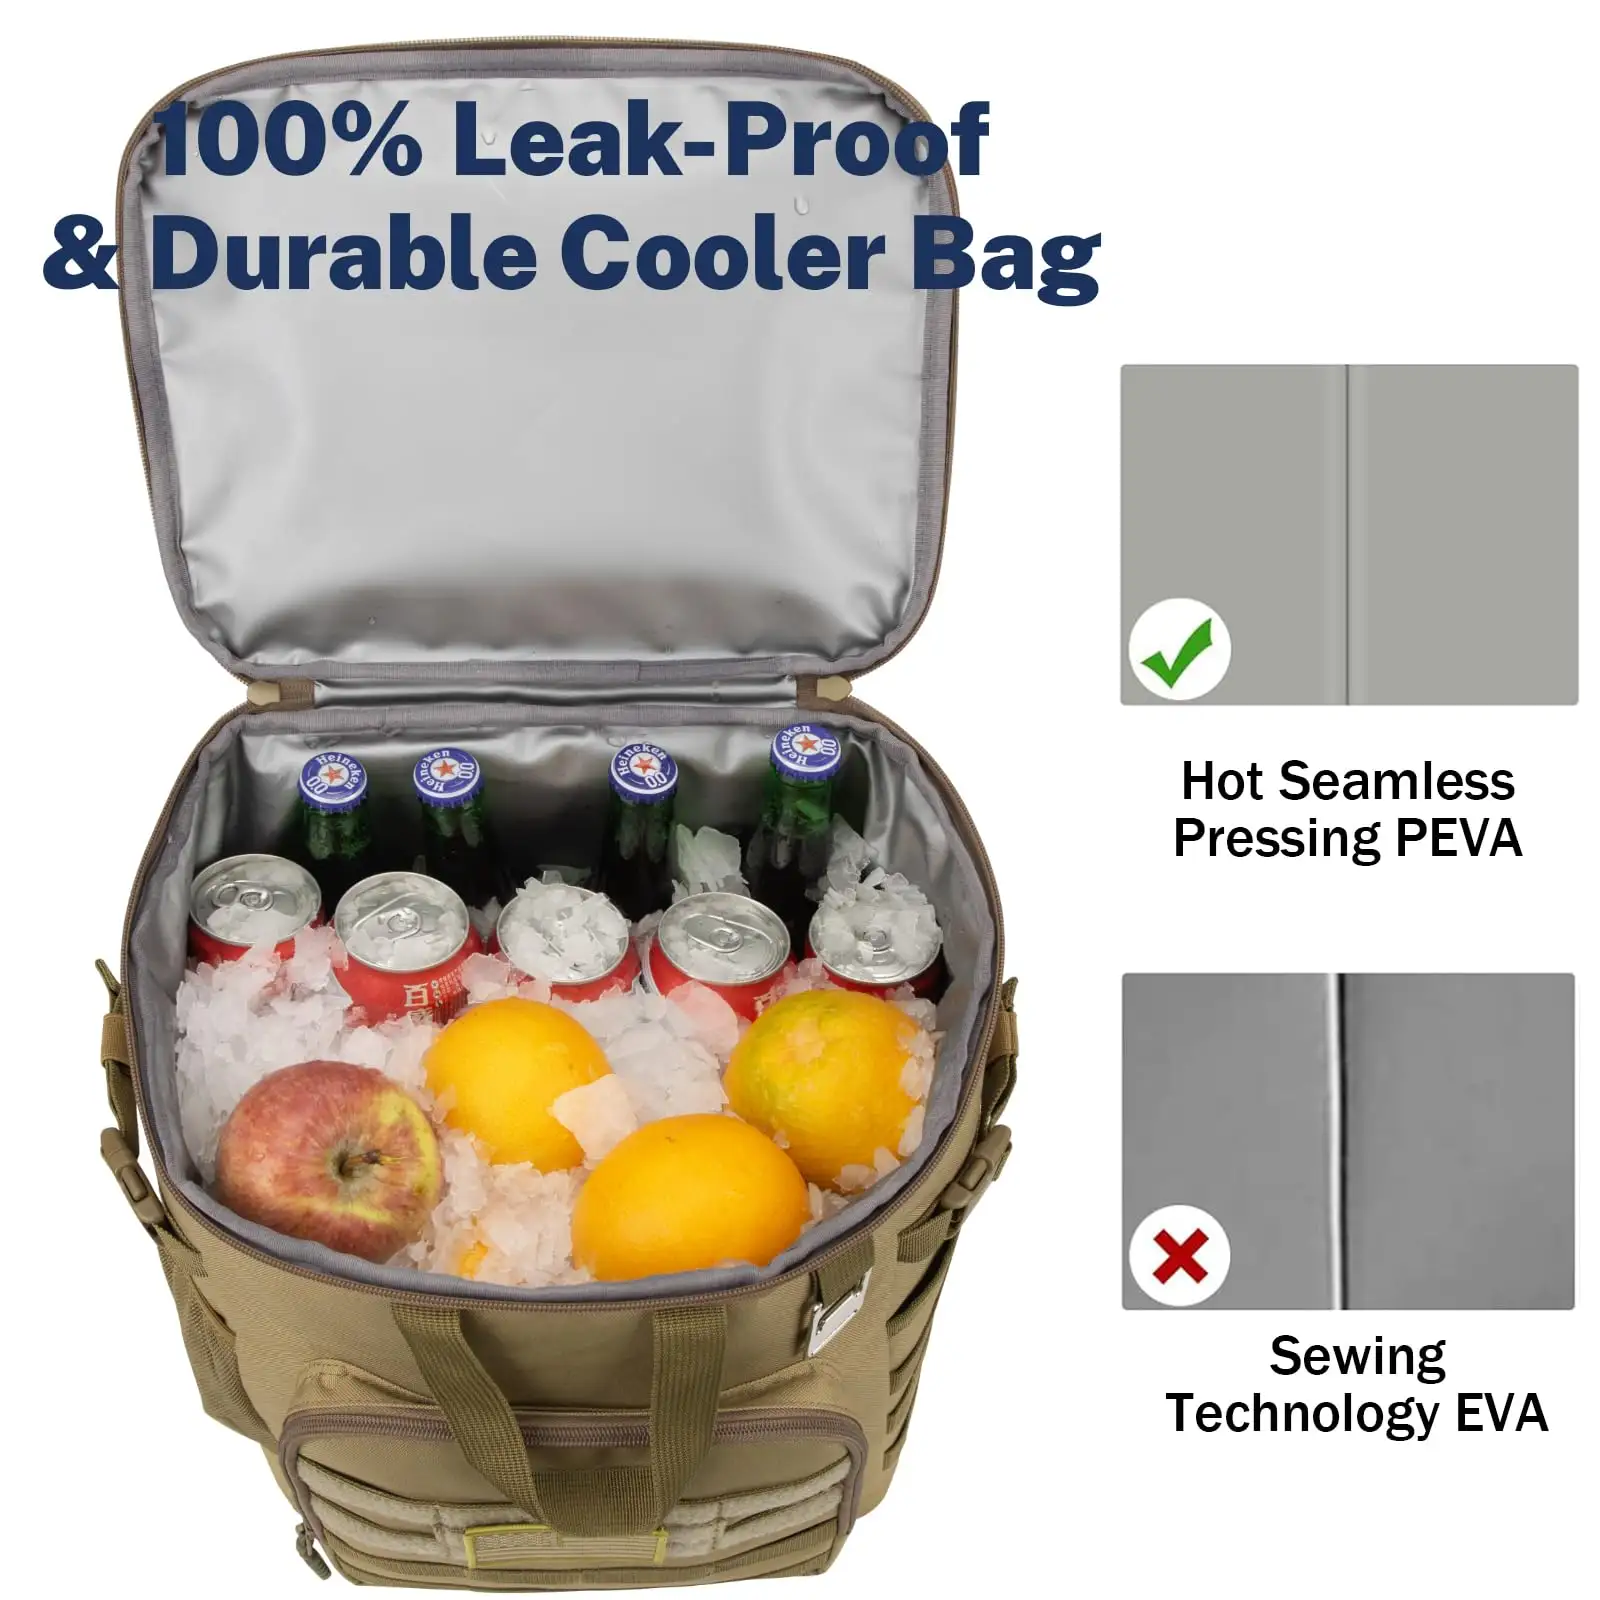 Mochila térmica de isolamento térmico para caça, mochila de caminhada, piquenique, mochila térmica durável, mochila refrigeradora de 45/55 latas